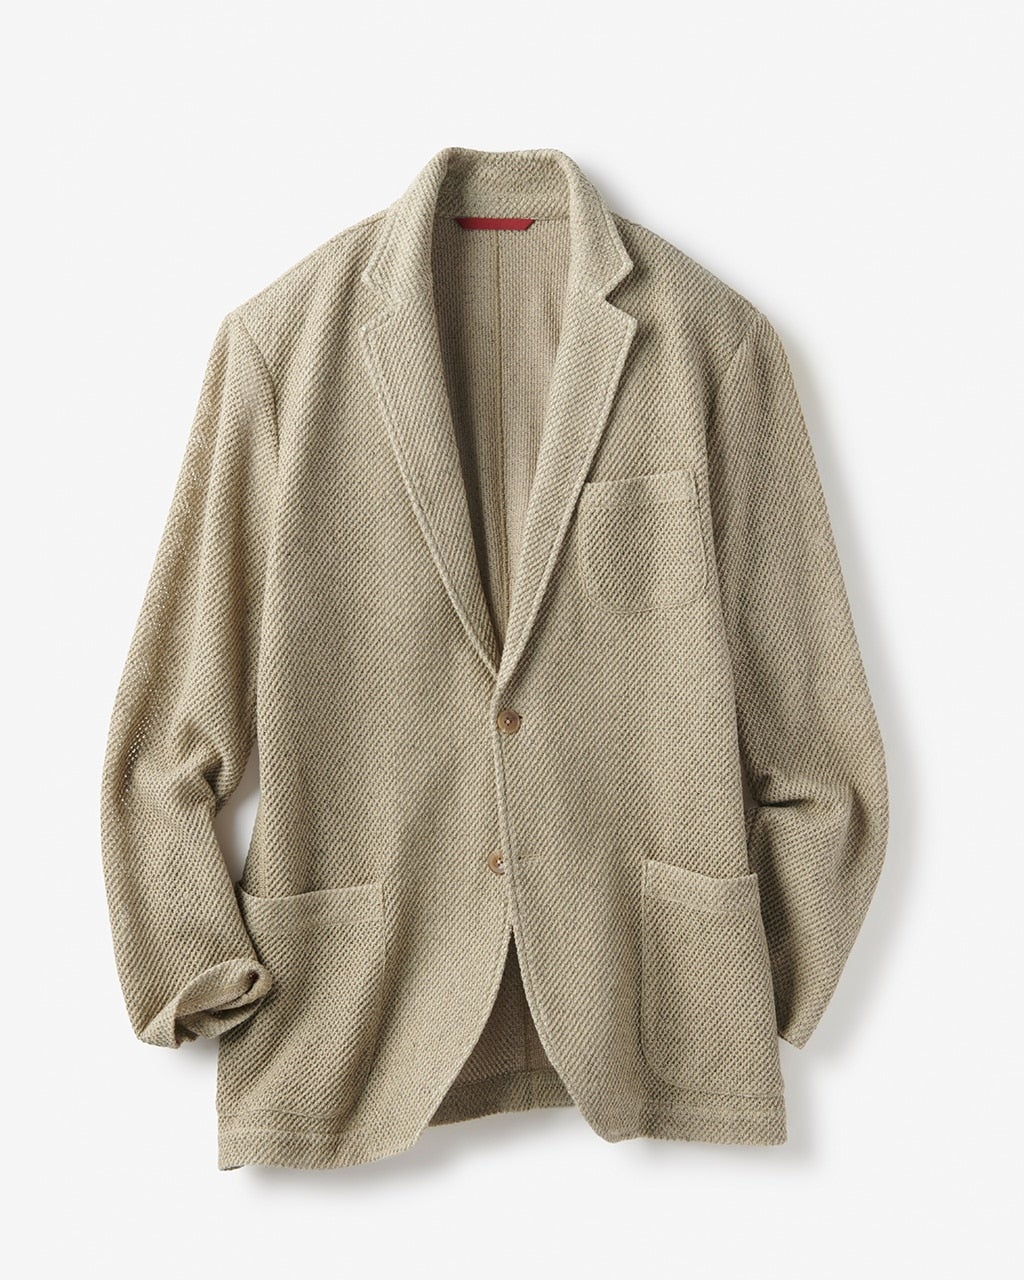 ラッセルジャケット/40代50代からのレディース・メンズファッション